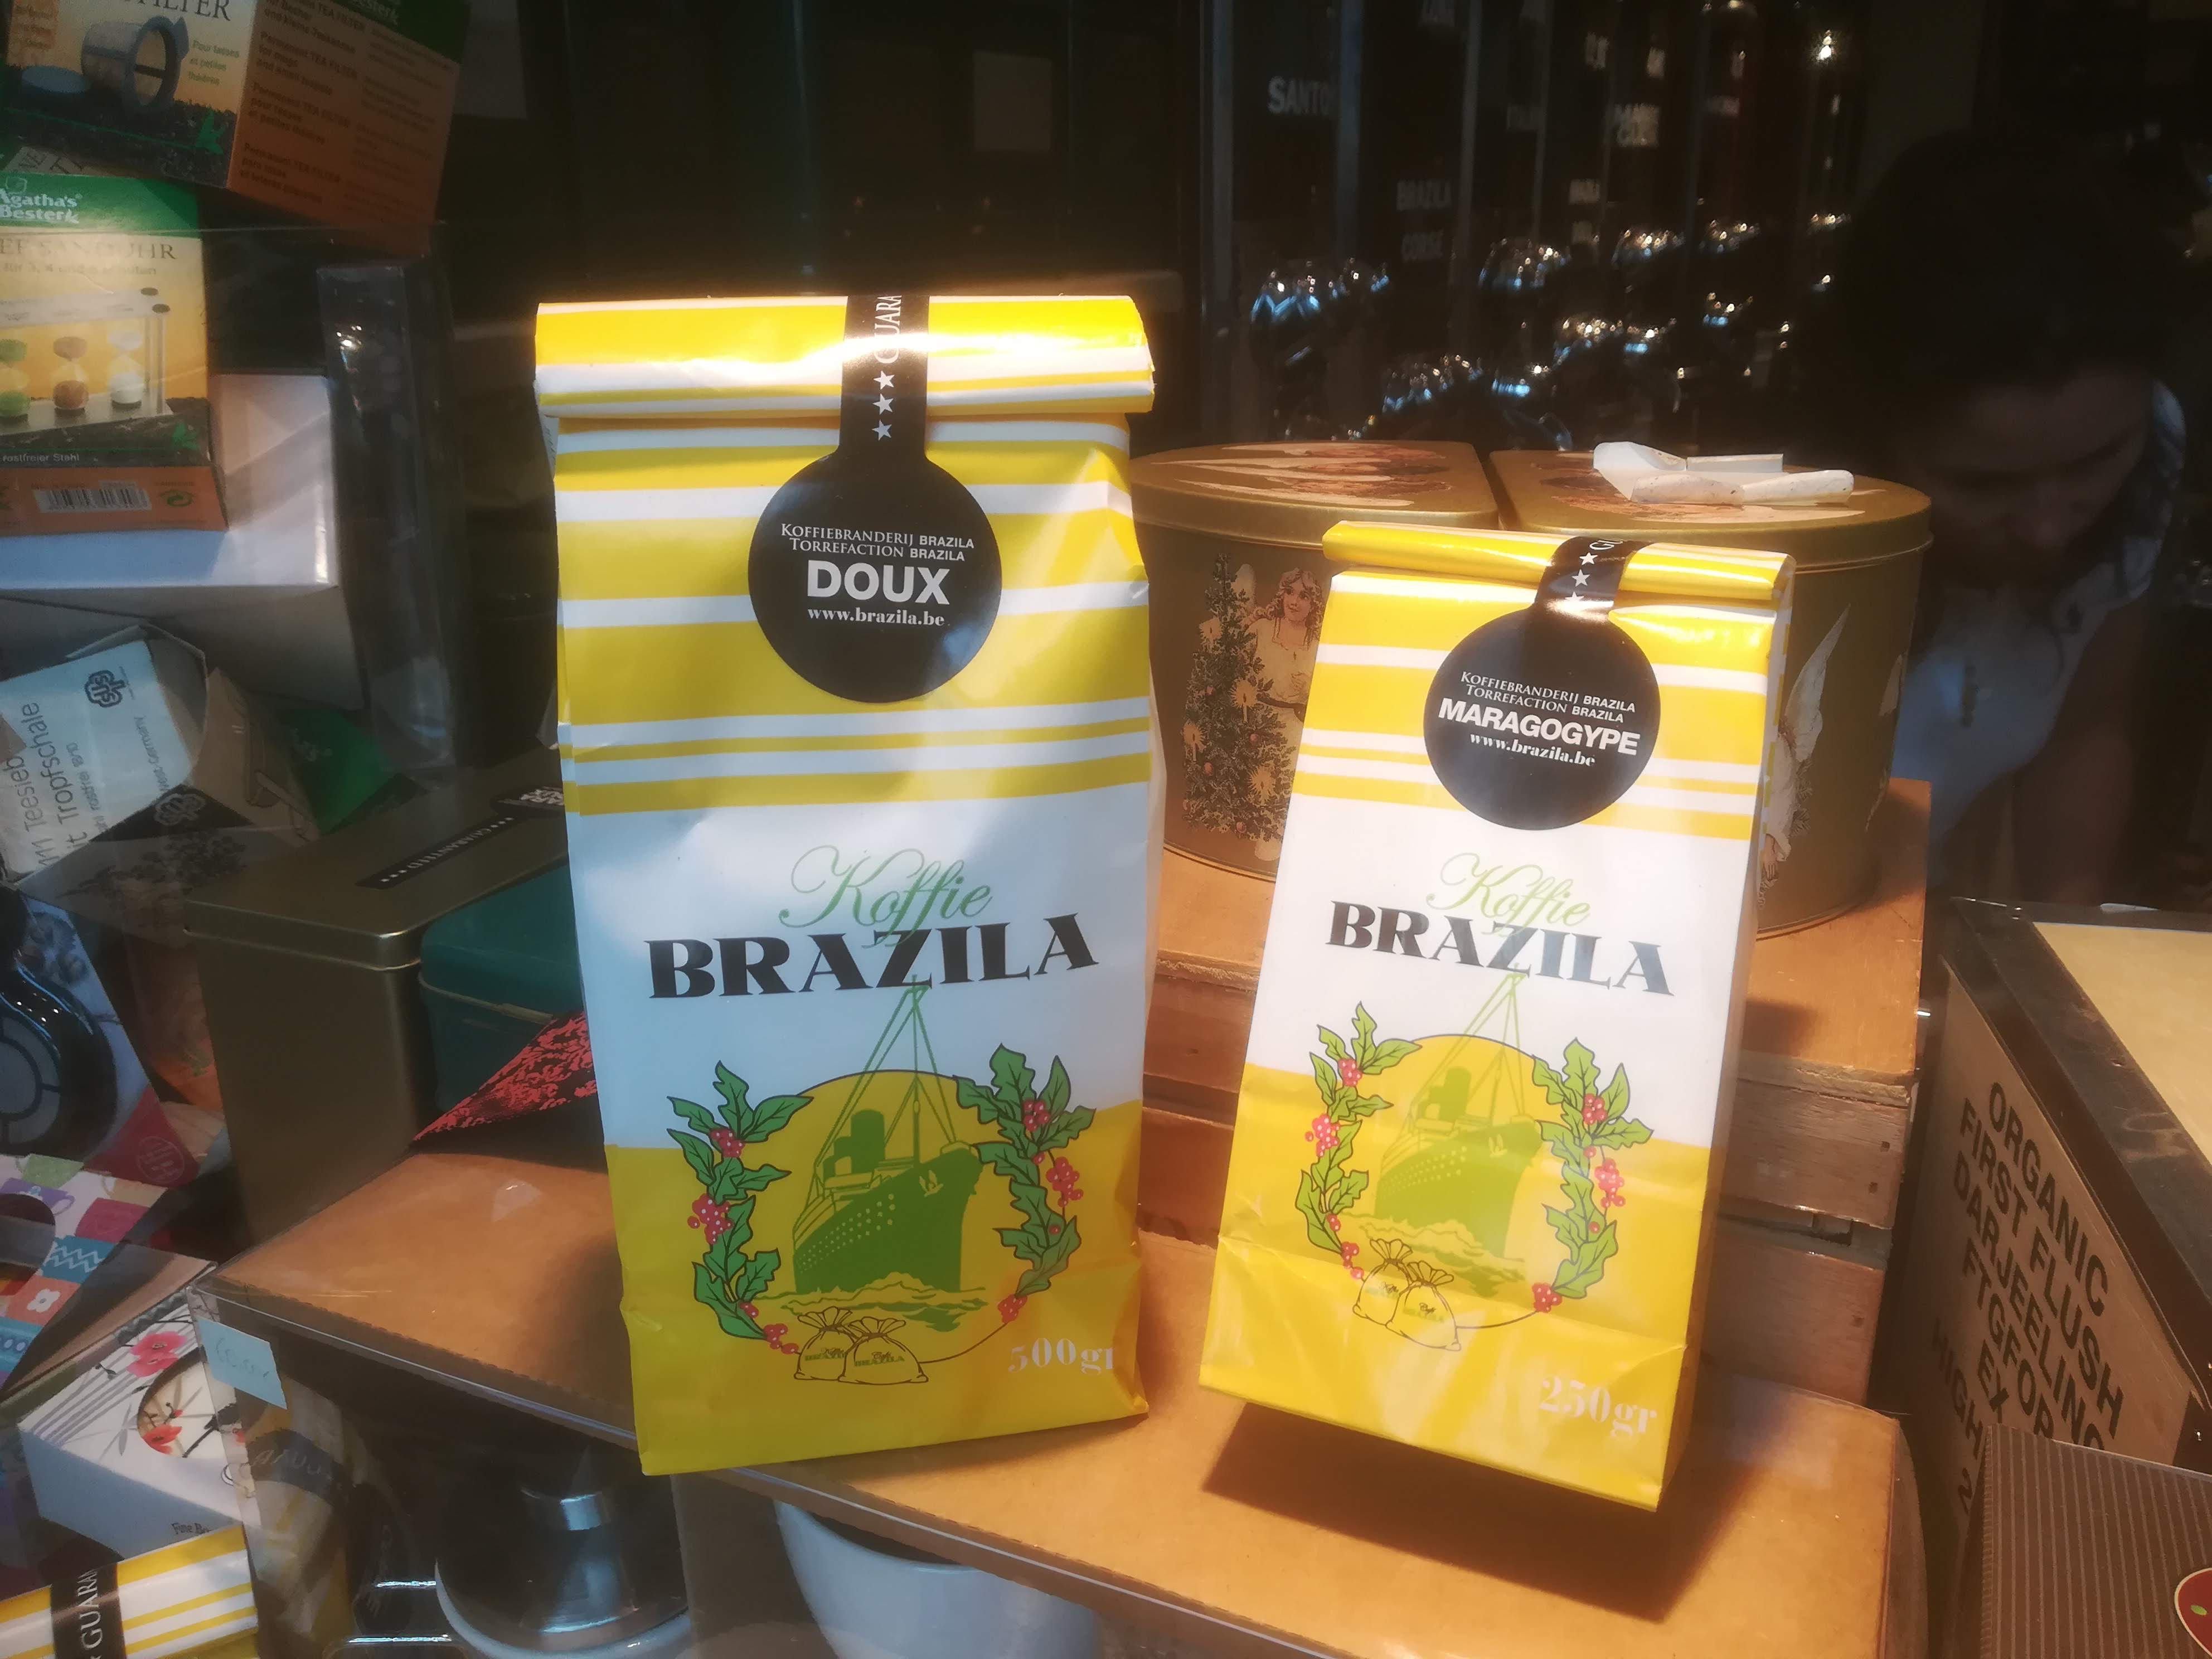 Verpakkingen van koffiebranderij Brazila in Knokke-Heist